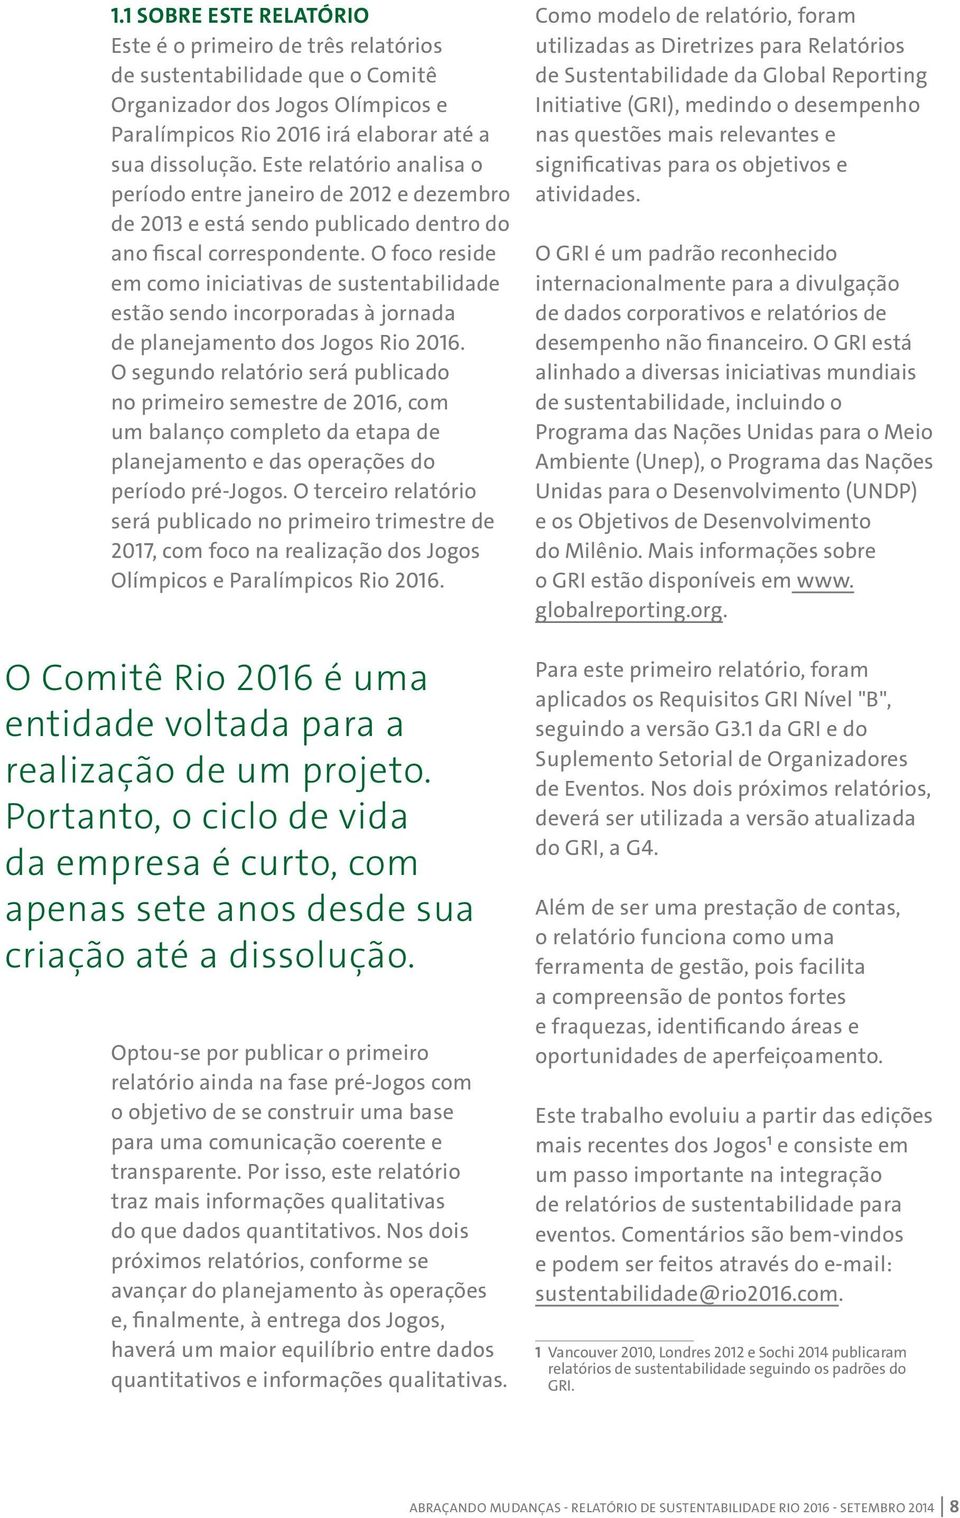 O foco reside em como iniciativas de sustentabilidade estão sendo incorporadas à jornada de planejamento dos Jogos Rio 2016.